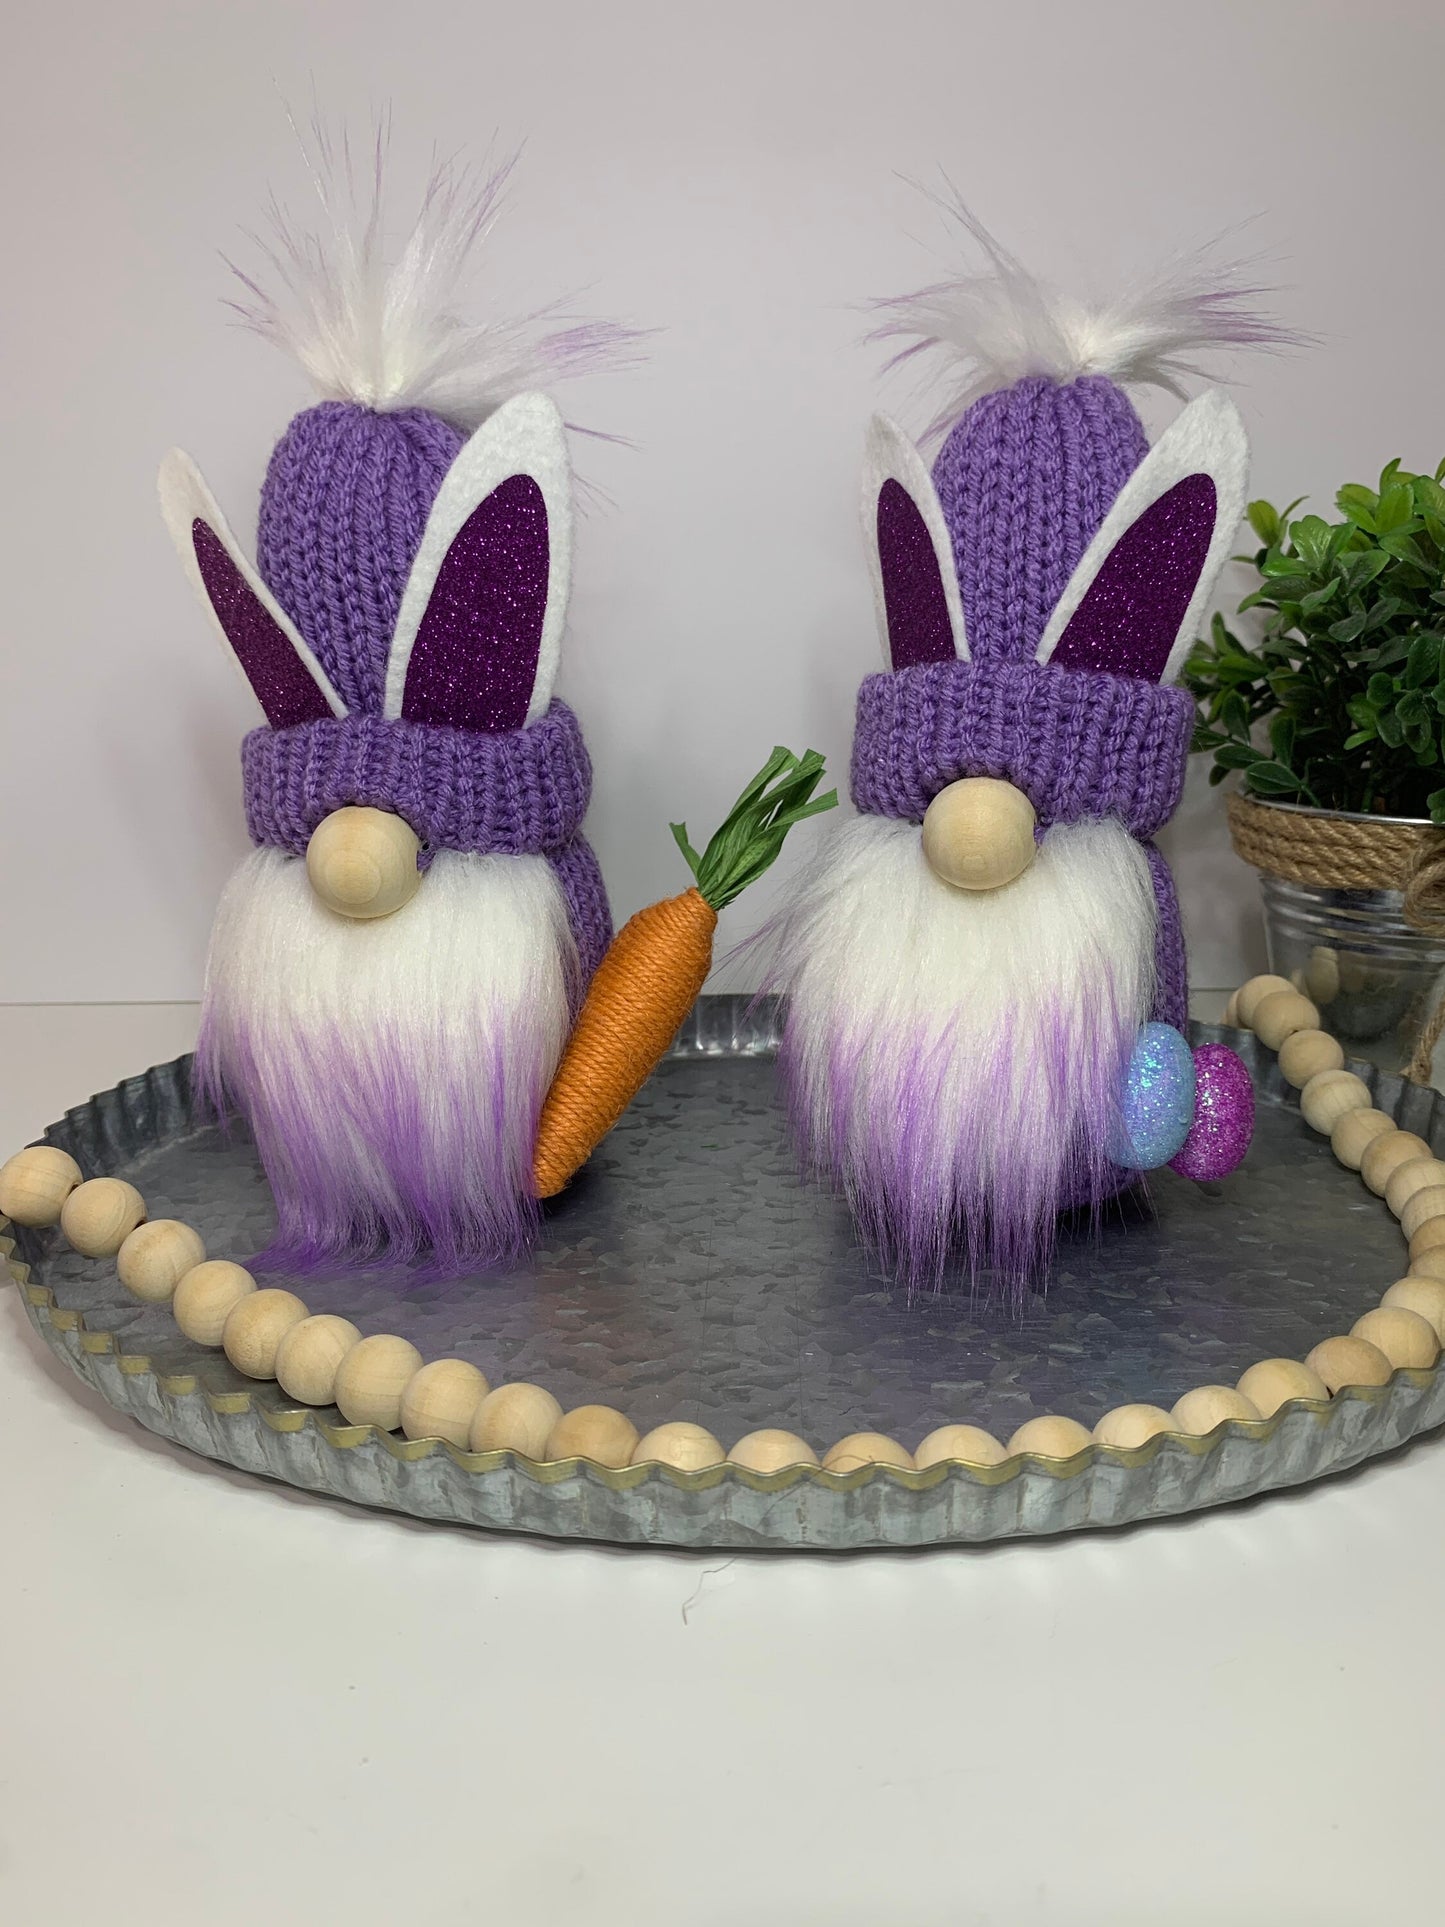 Easter Farmhouse Gnome / Tiered Tray Decor / Rustic Spring Gnome / Bunny Rabbit Gnome